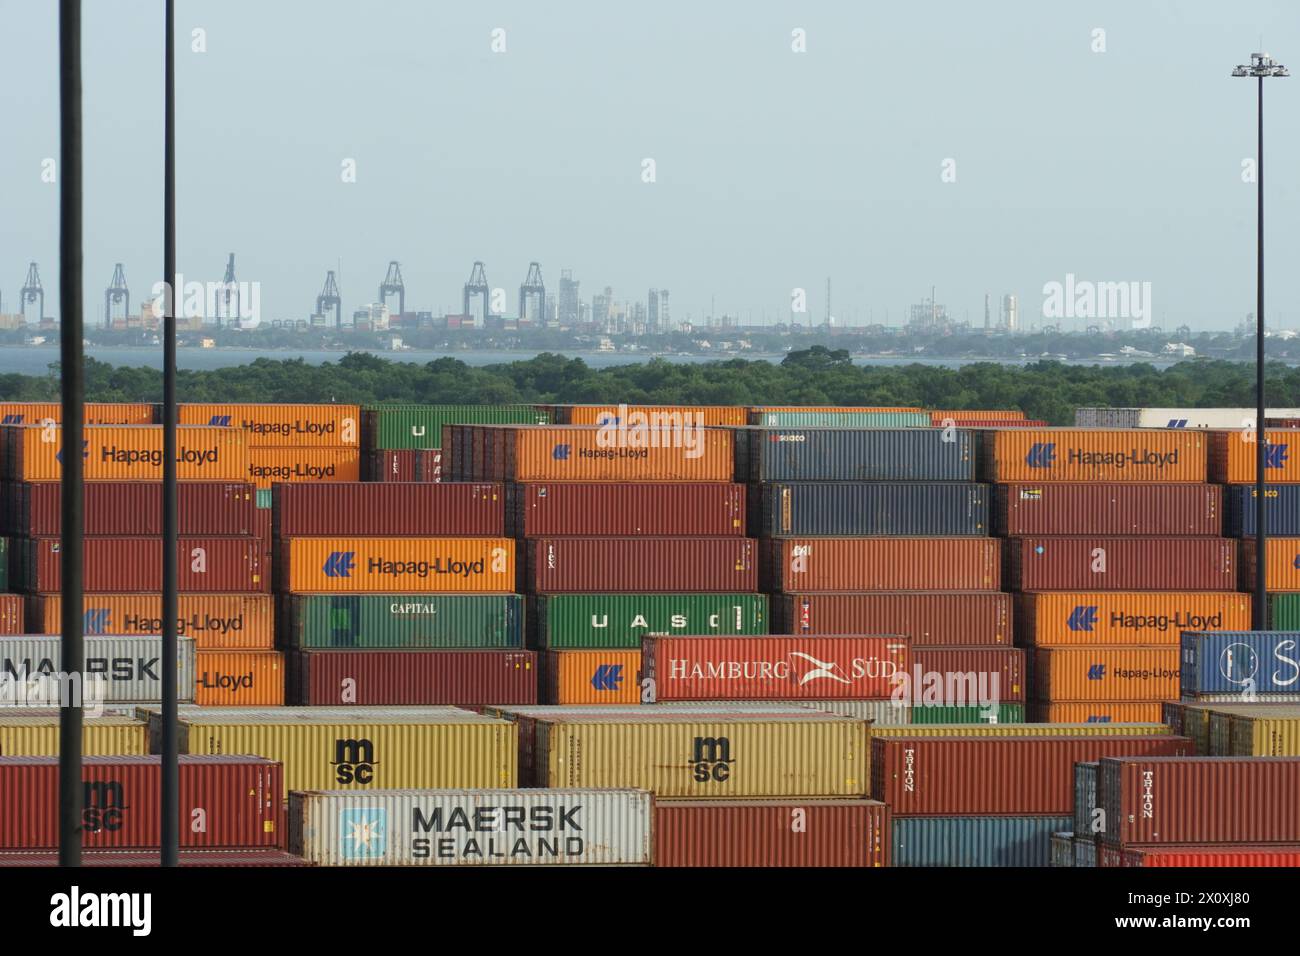 Seehafenterminal in Houston mit verstauten Containern verschiedener Verlader, die für das Verladen auf Schiffe und den Transport in andere Länder bereit sind. Stockfoto